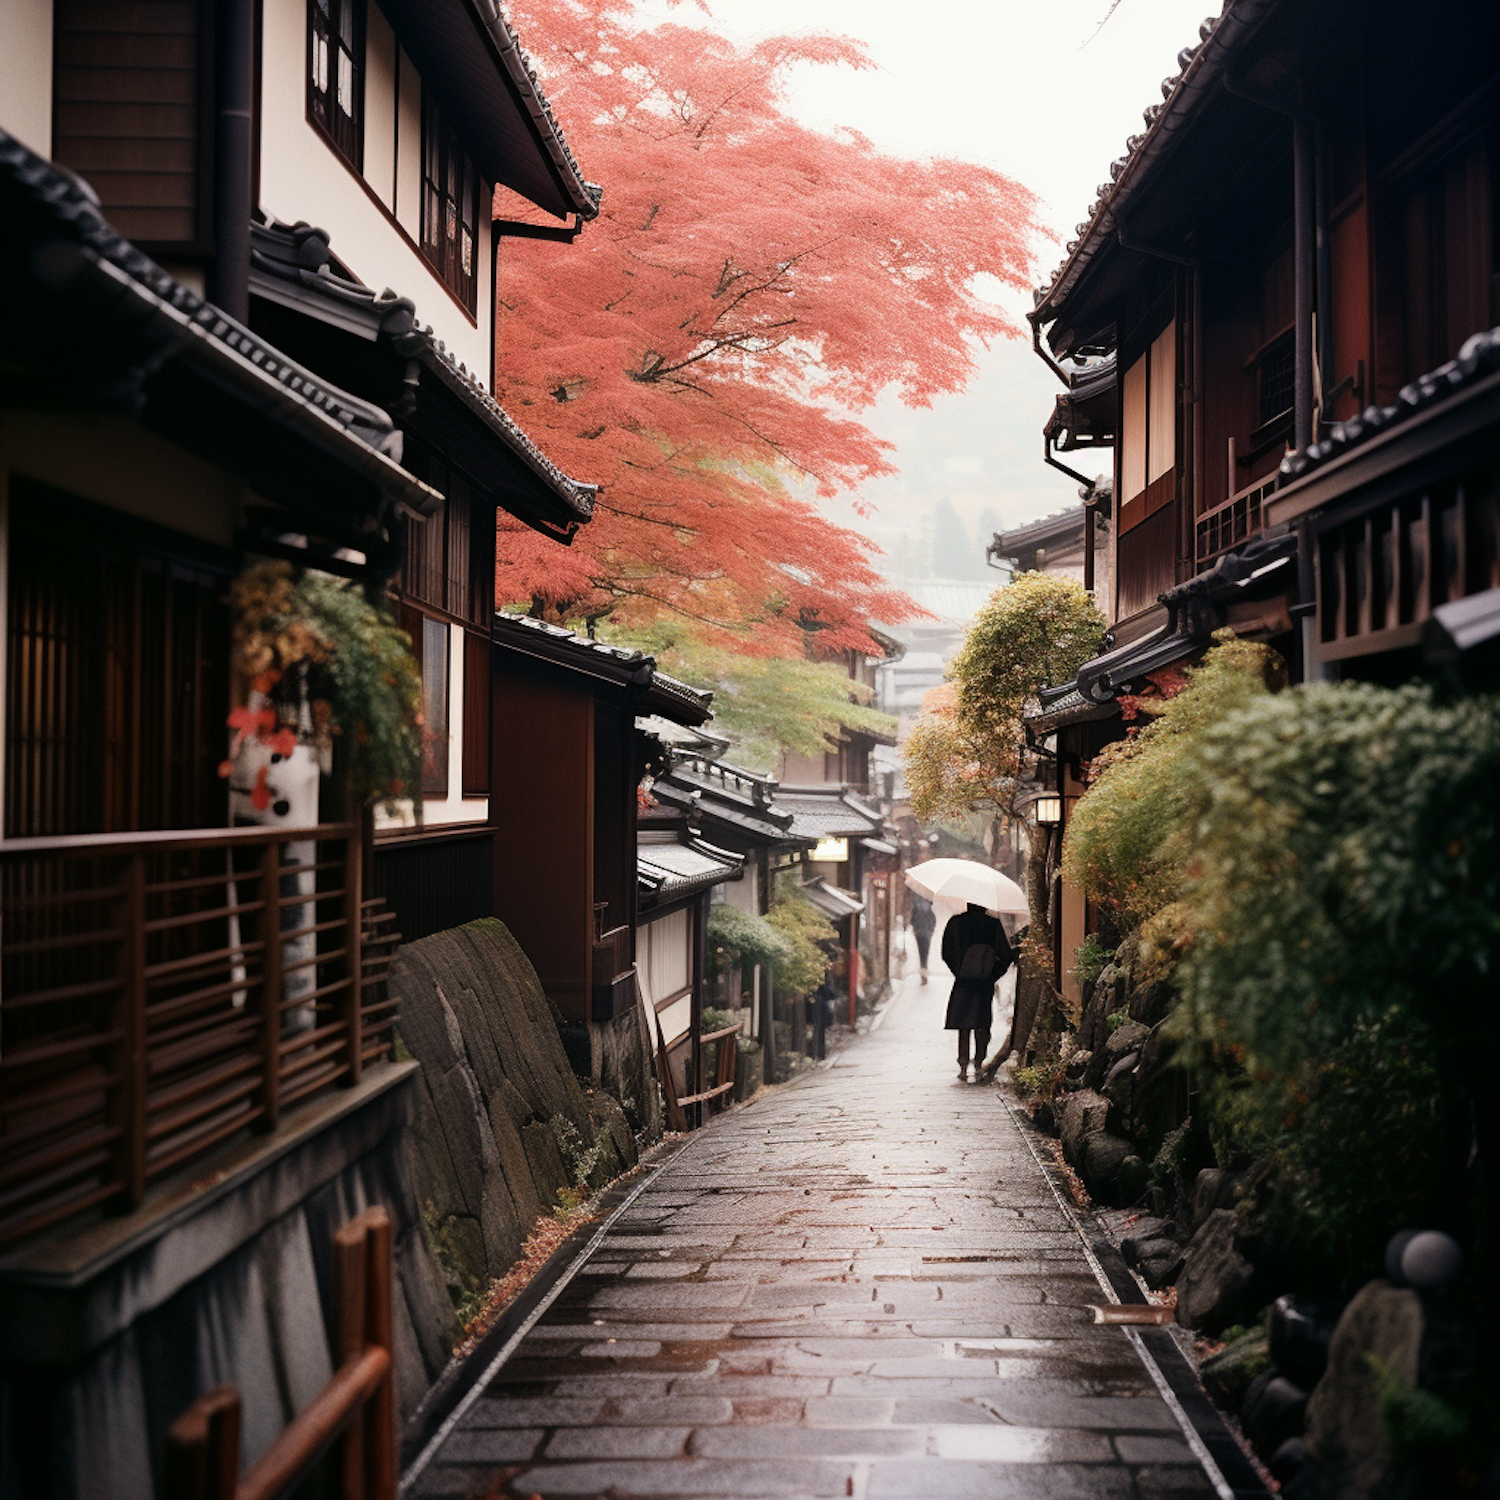 Autumn Serenity on a Rainy Japanese Lane